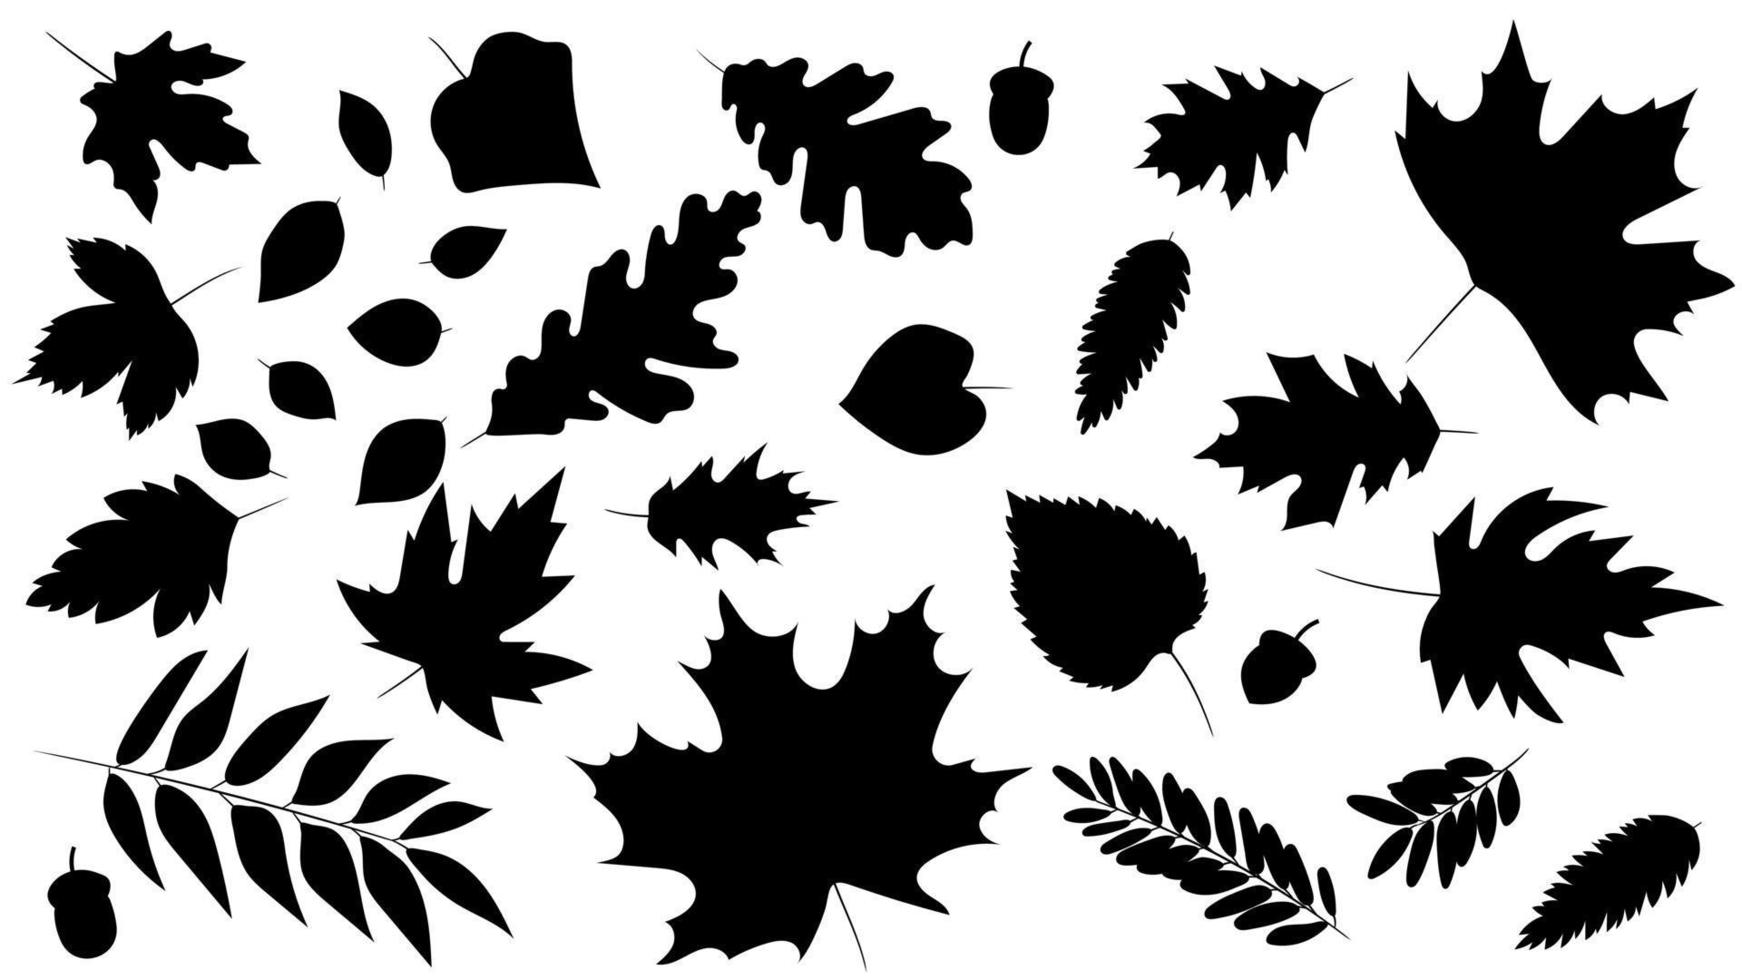 grand ensemble de feuilles de différents types d'arbres isolés. ensemble de chêne, érable, rowan et glands de feuilles d'automne noir. style de silhouette réaliste. illustration vectorielle. ensemble de feuillage. vecteur